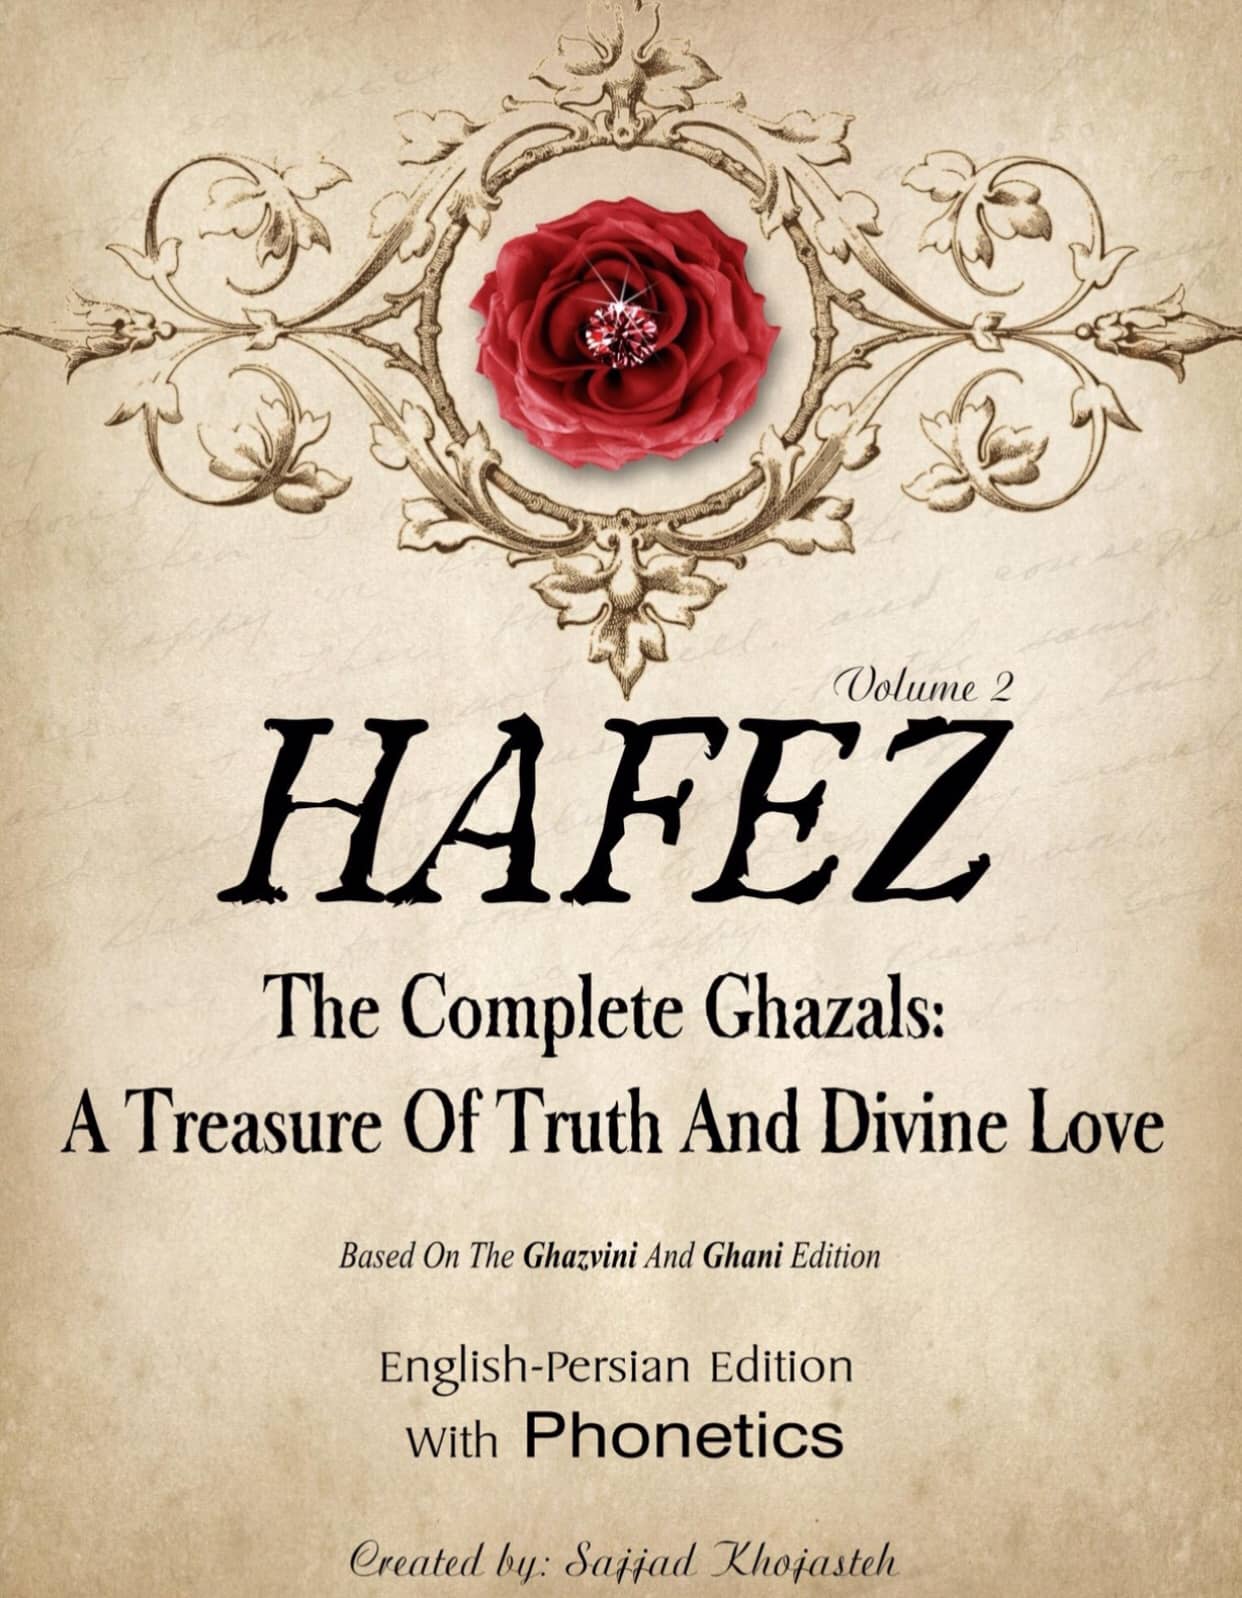 Hafez ghazals